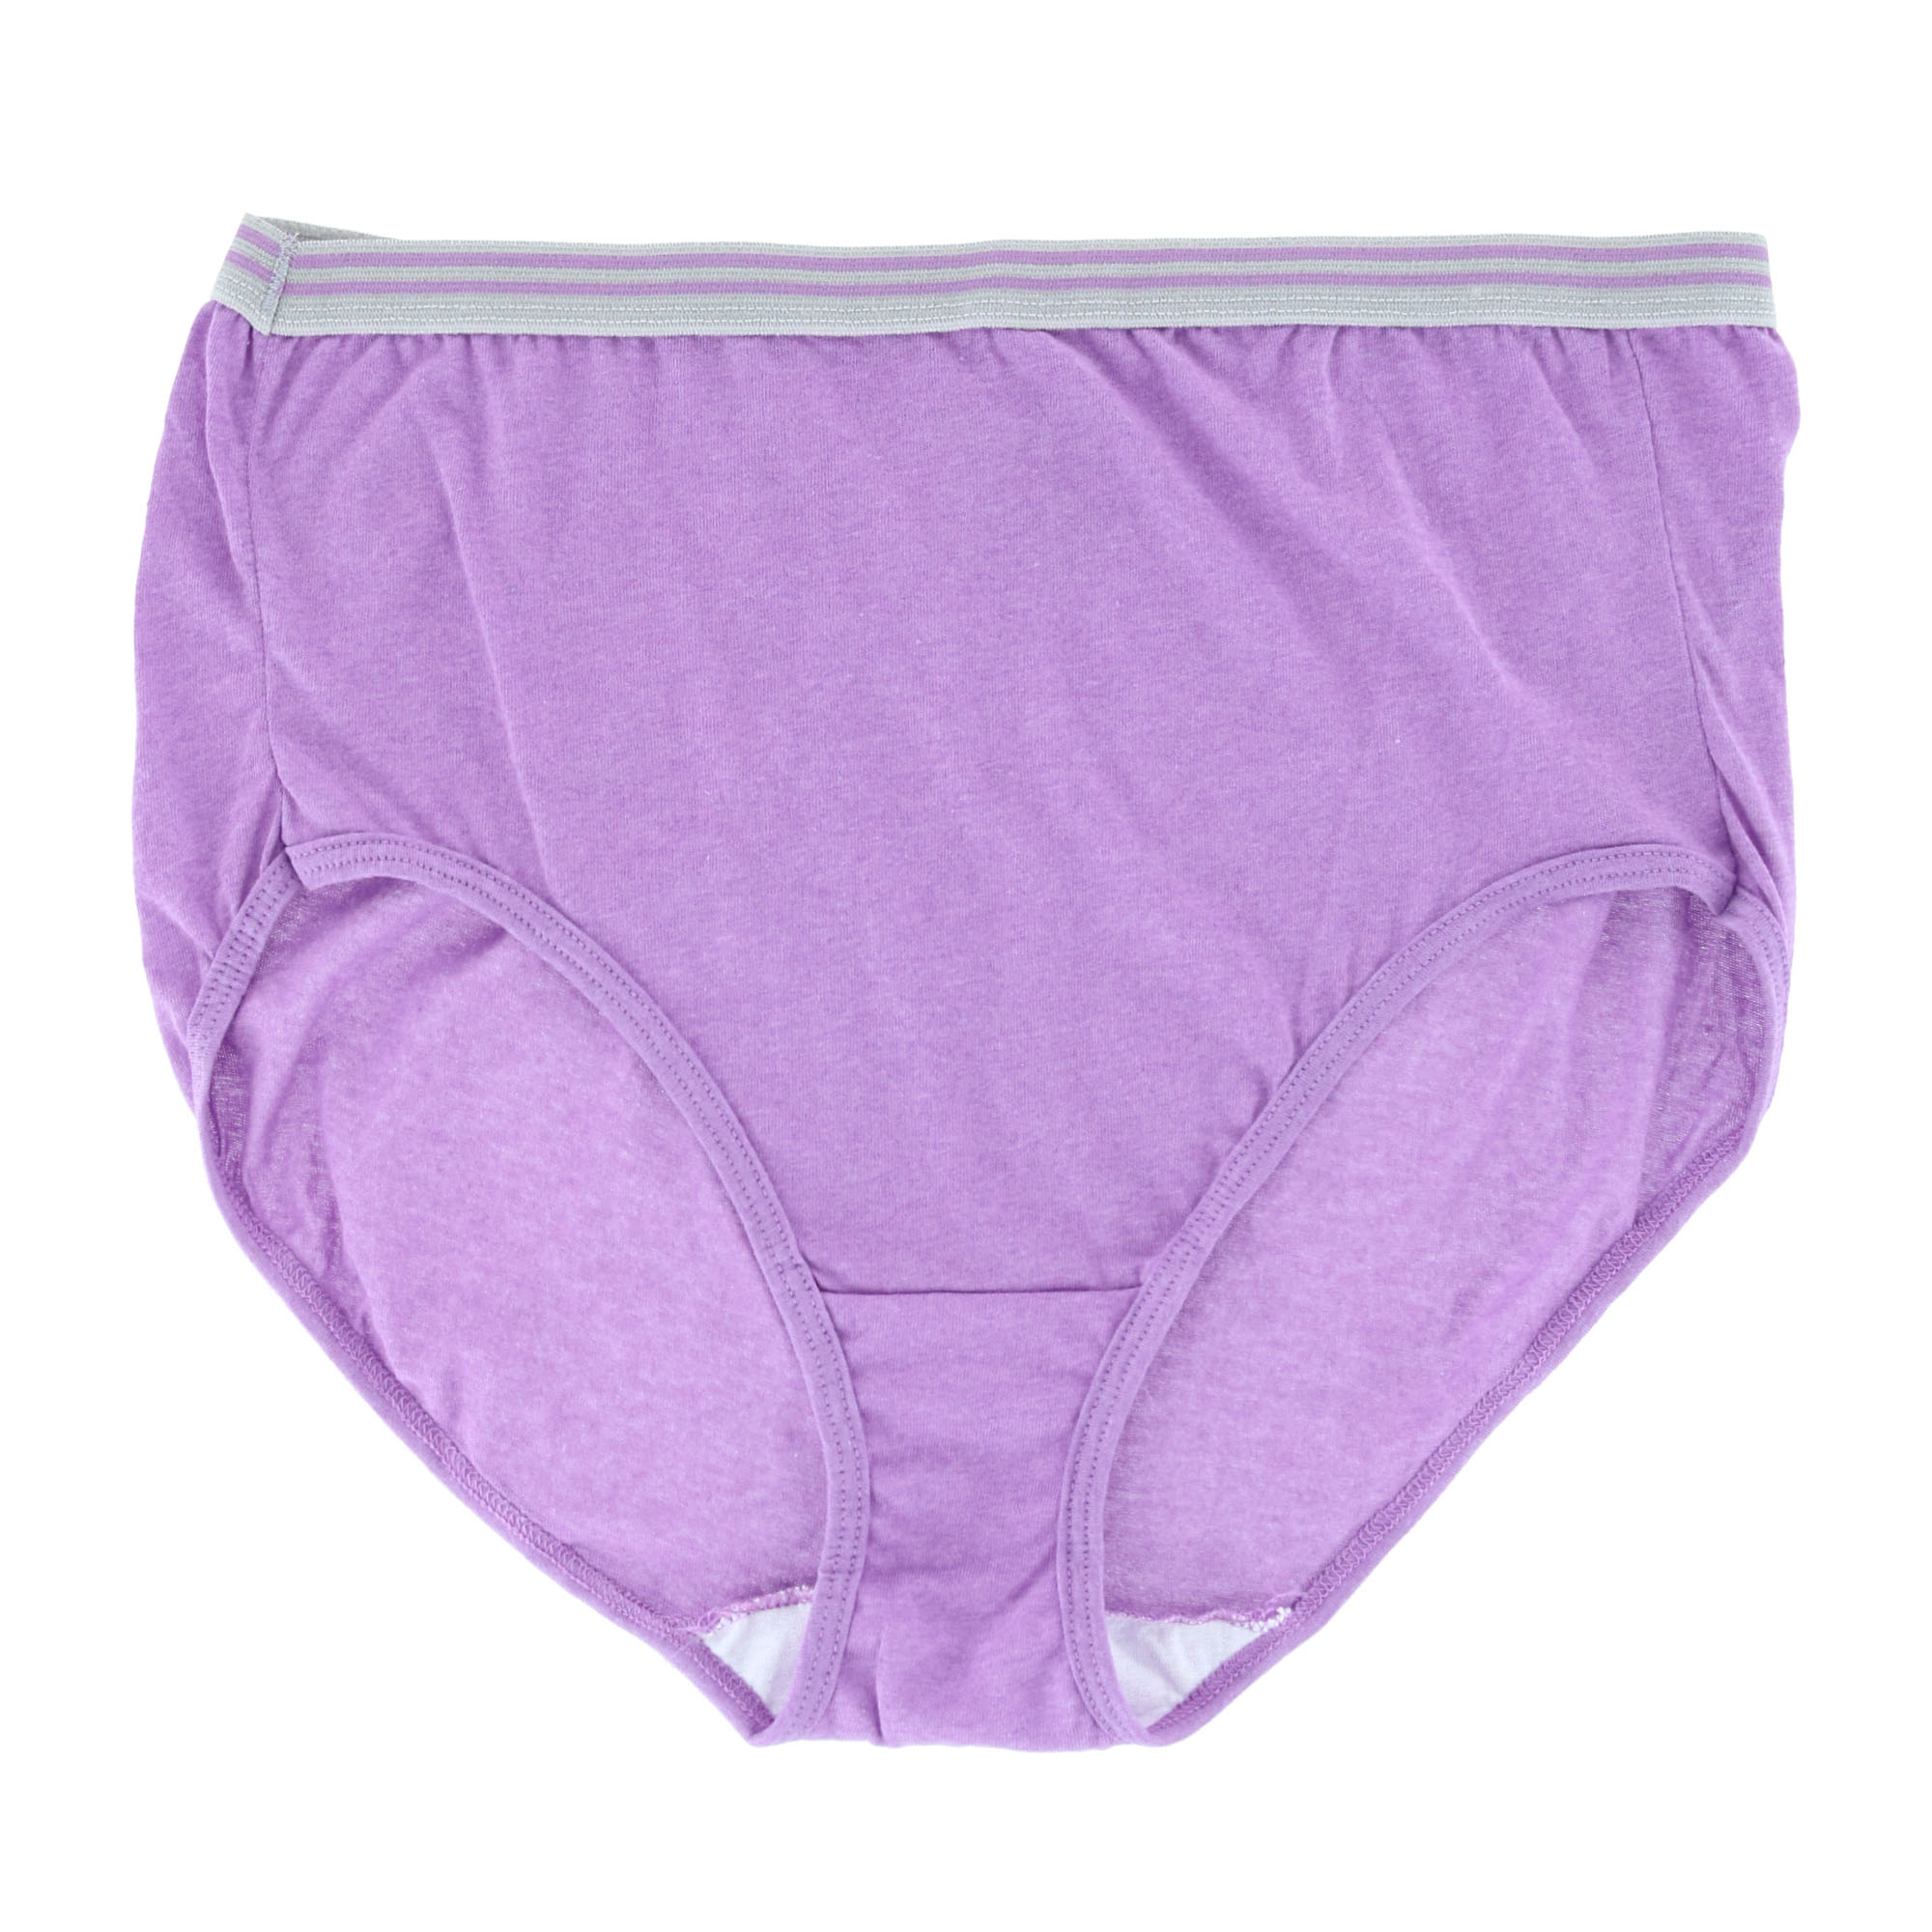 Purple Underwear & Panties For Plus Size Women